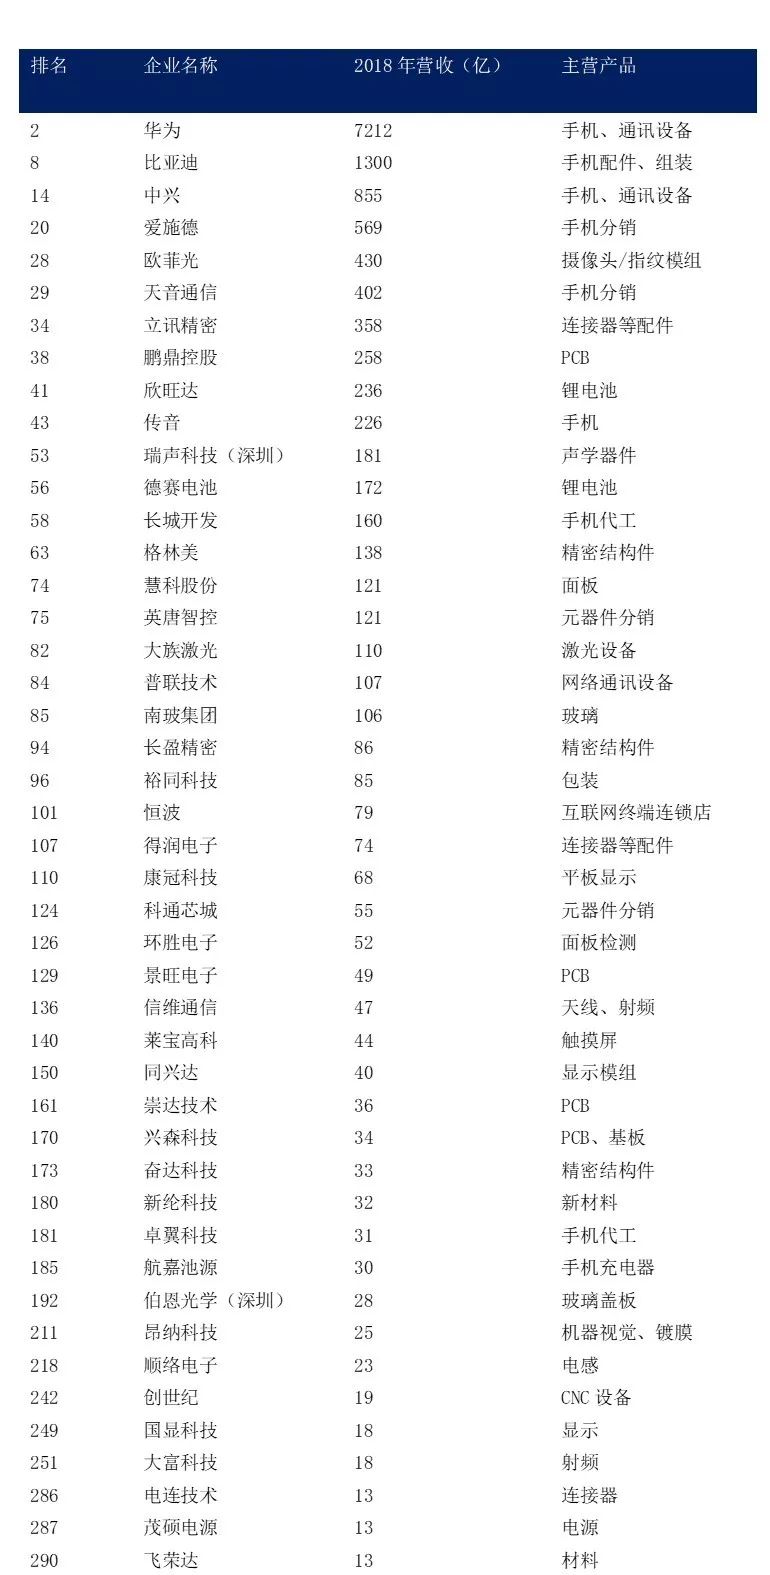 2019企业排行榜_2019中国轮胎企业排行榜发布 总计53家企业